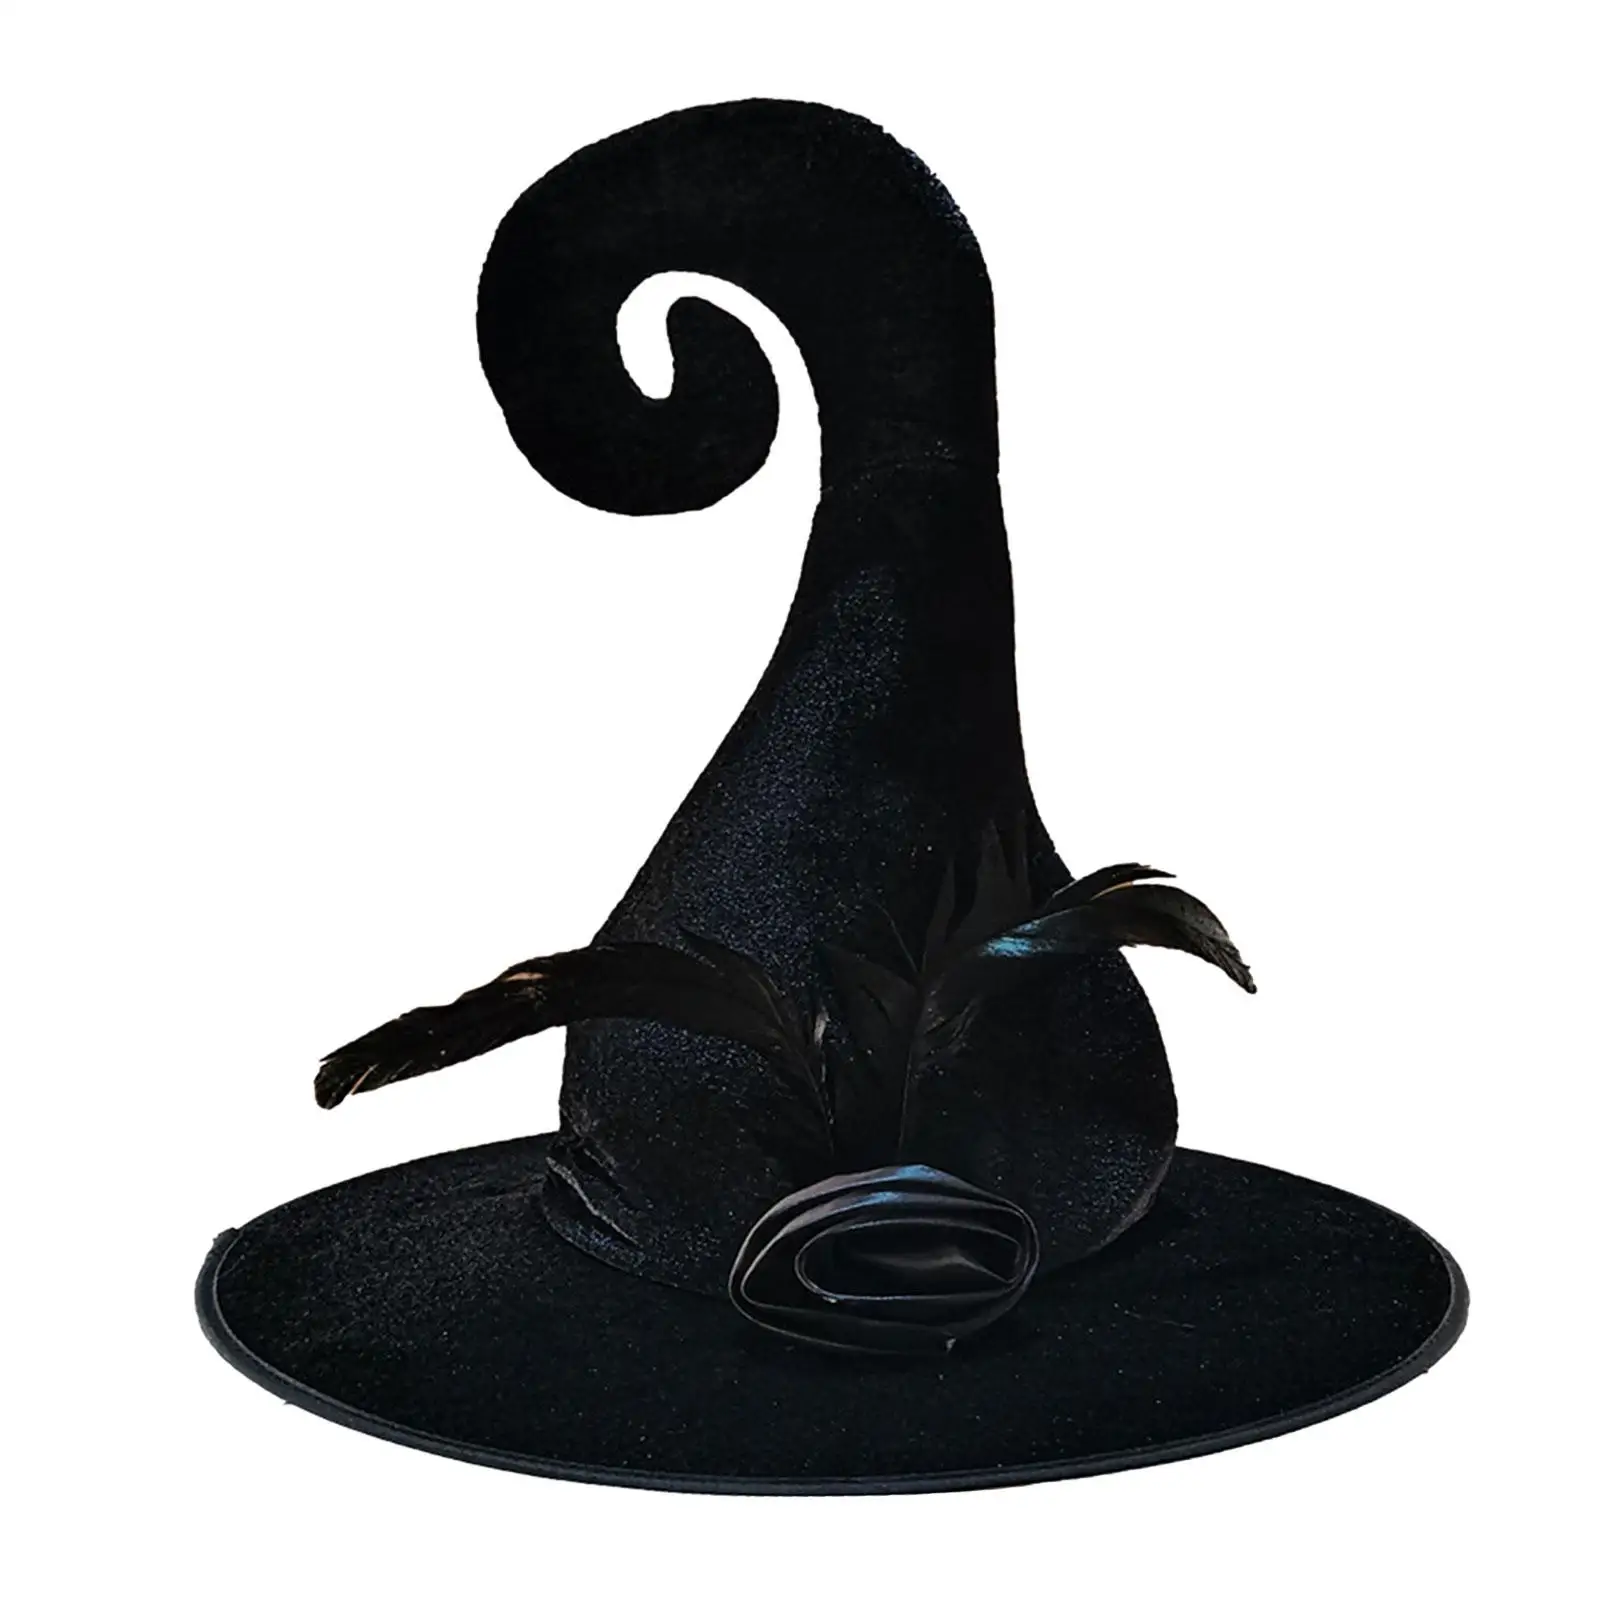 

Женская шляпа ведьмы, шляпы для взрослых, аксессуар для костюма, декоративная Шляпа Волшебника для Хэллоуина, маскарадный костюм, карнавал, Маскарад